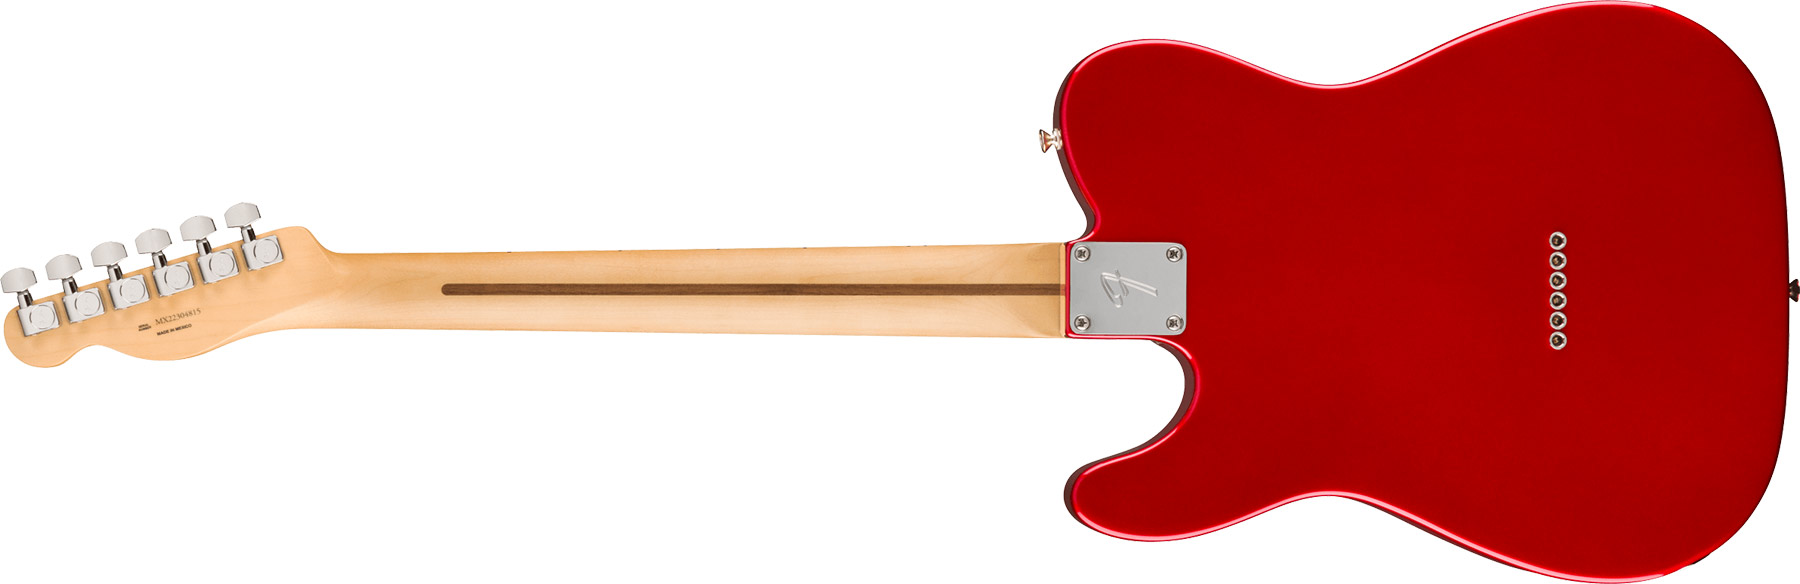 Fender Tele Player Mex 2023 2s Ht Mn - Candy Apple Red - Televorm elektrische gitaar - Variation 1